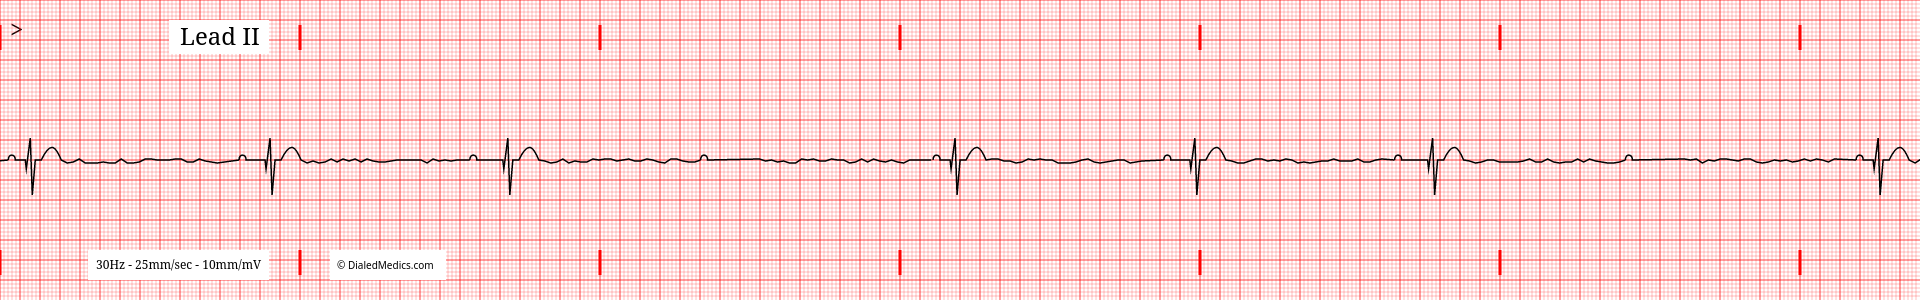 The Problem: How We Teach EKGs